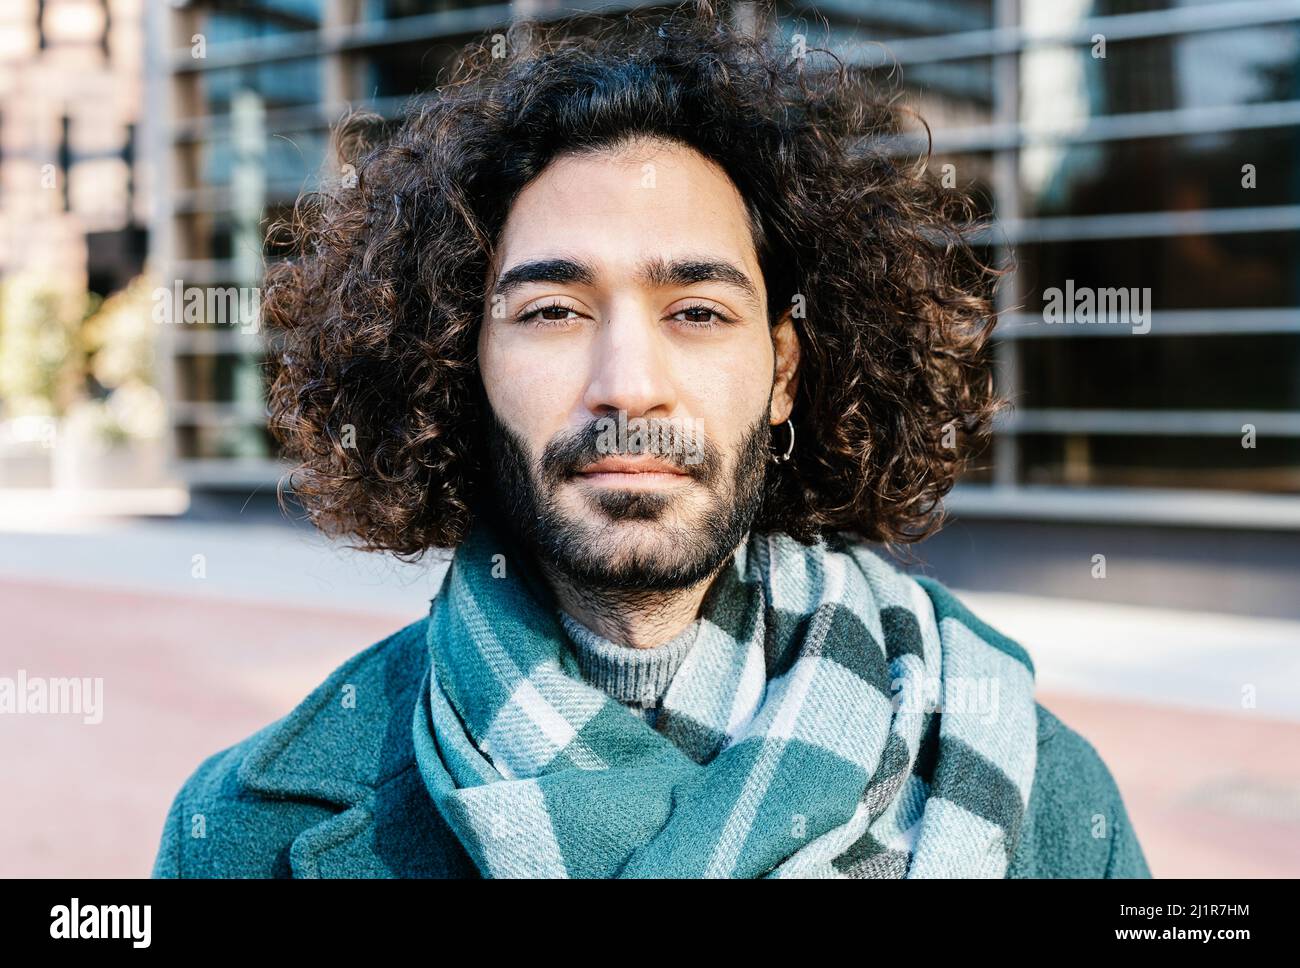 Ritratto urbano del giovane curly con barba in posa sulla strada Foto Stock